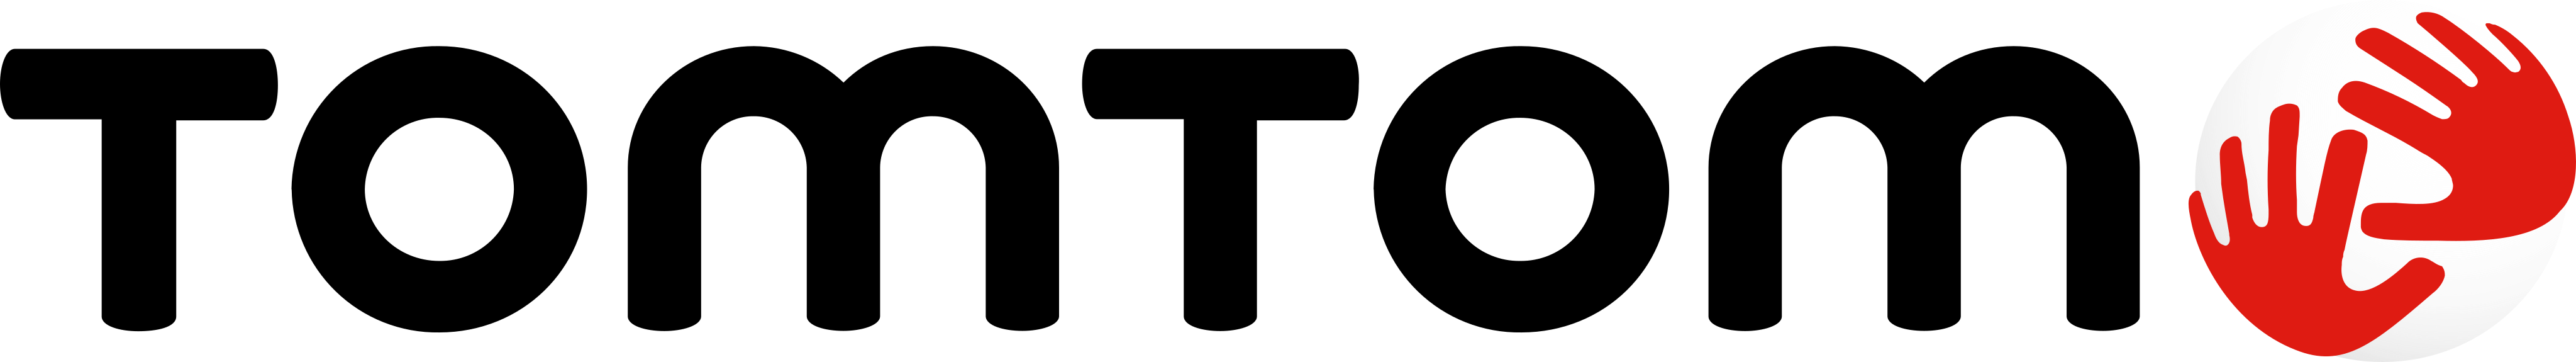 tomtom logo - TomTom Logo